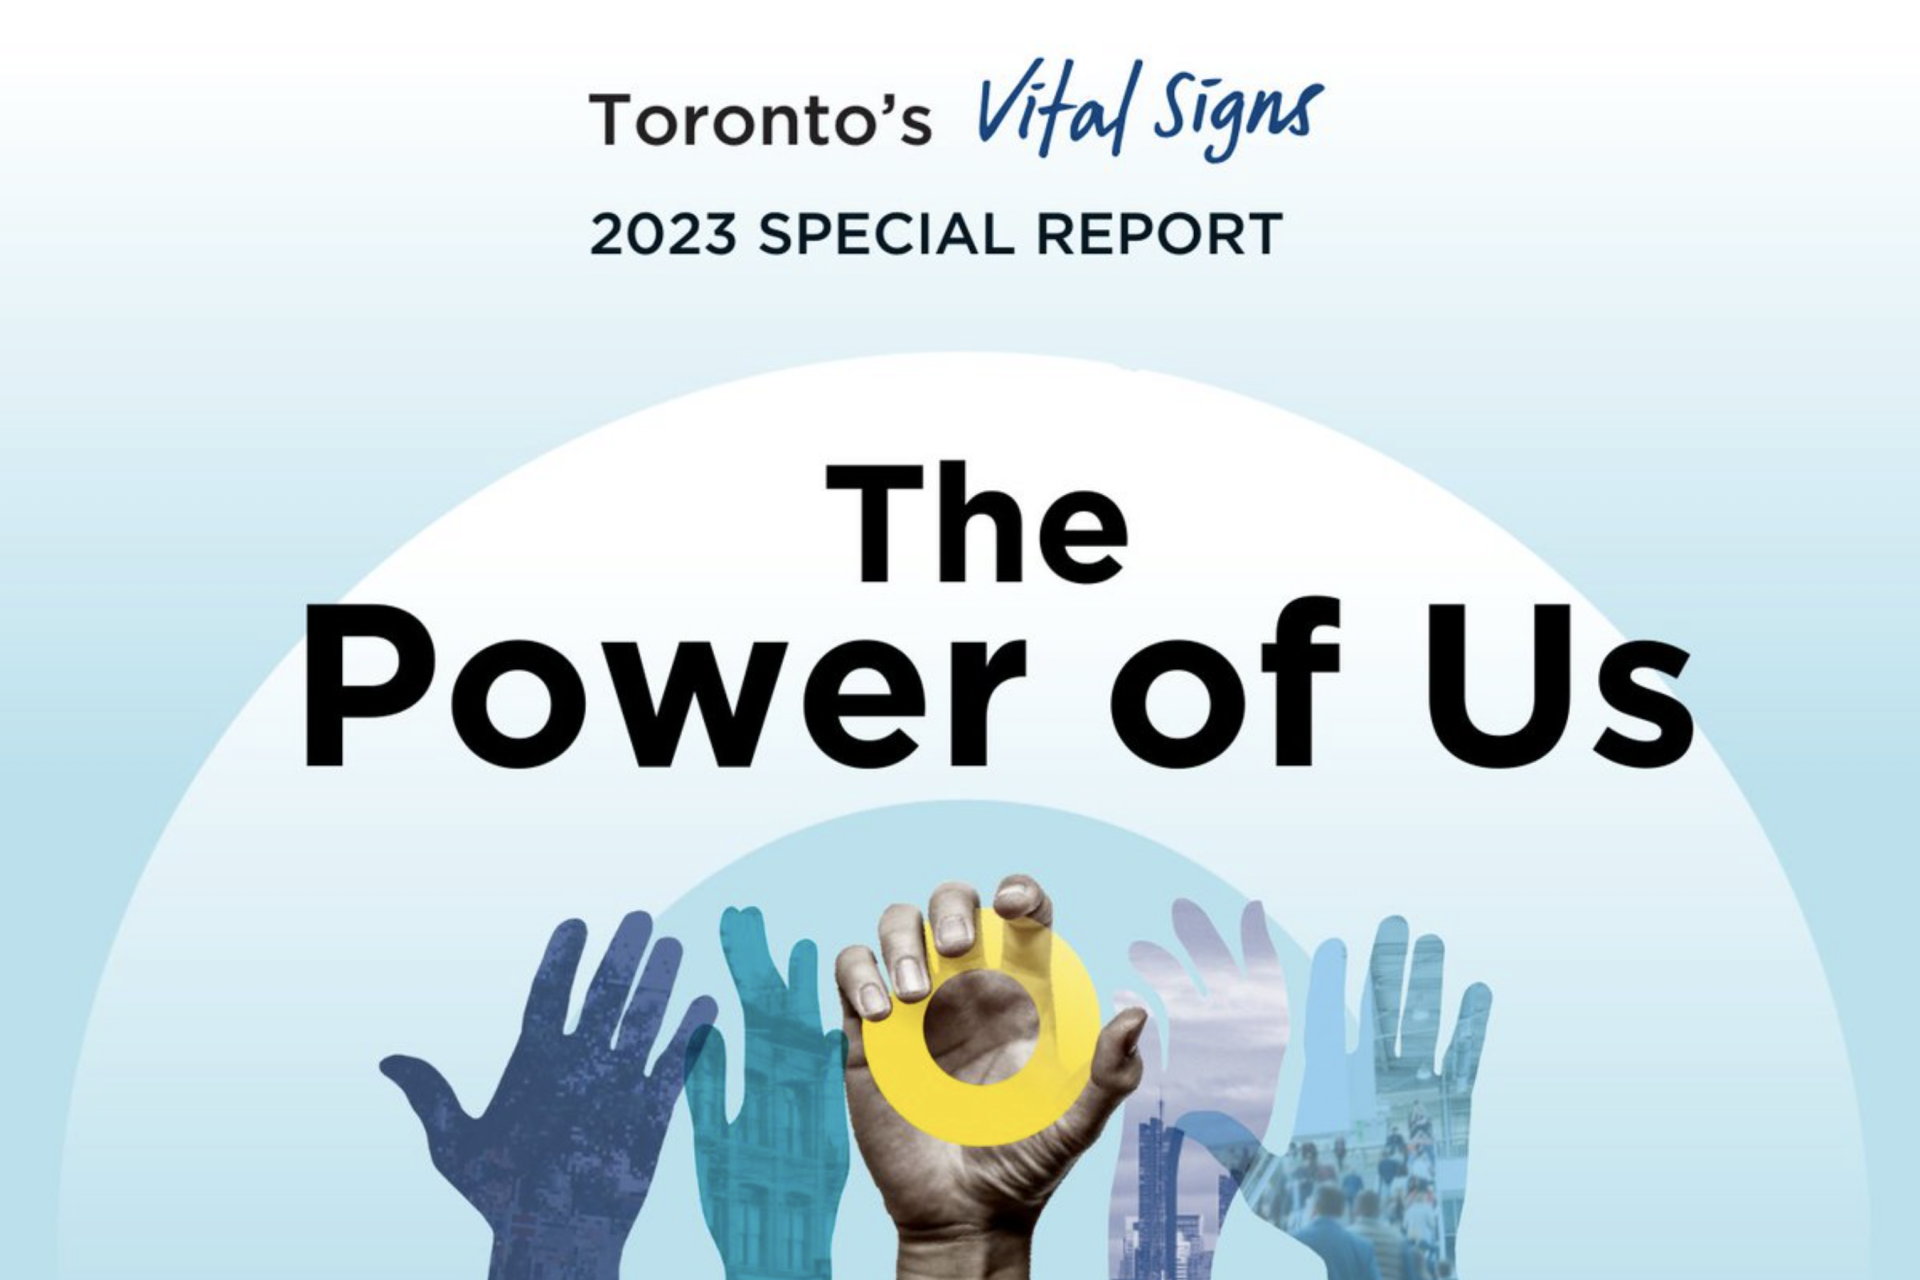 Relatório dos sinais vitais de Toronto